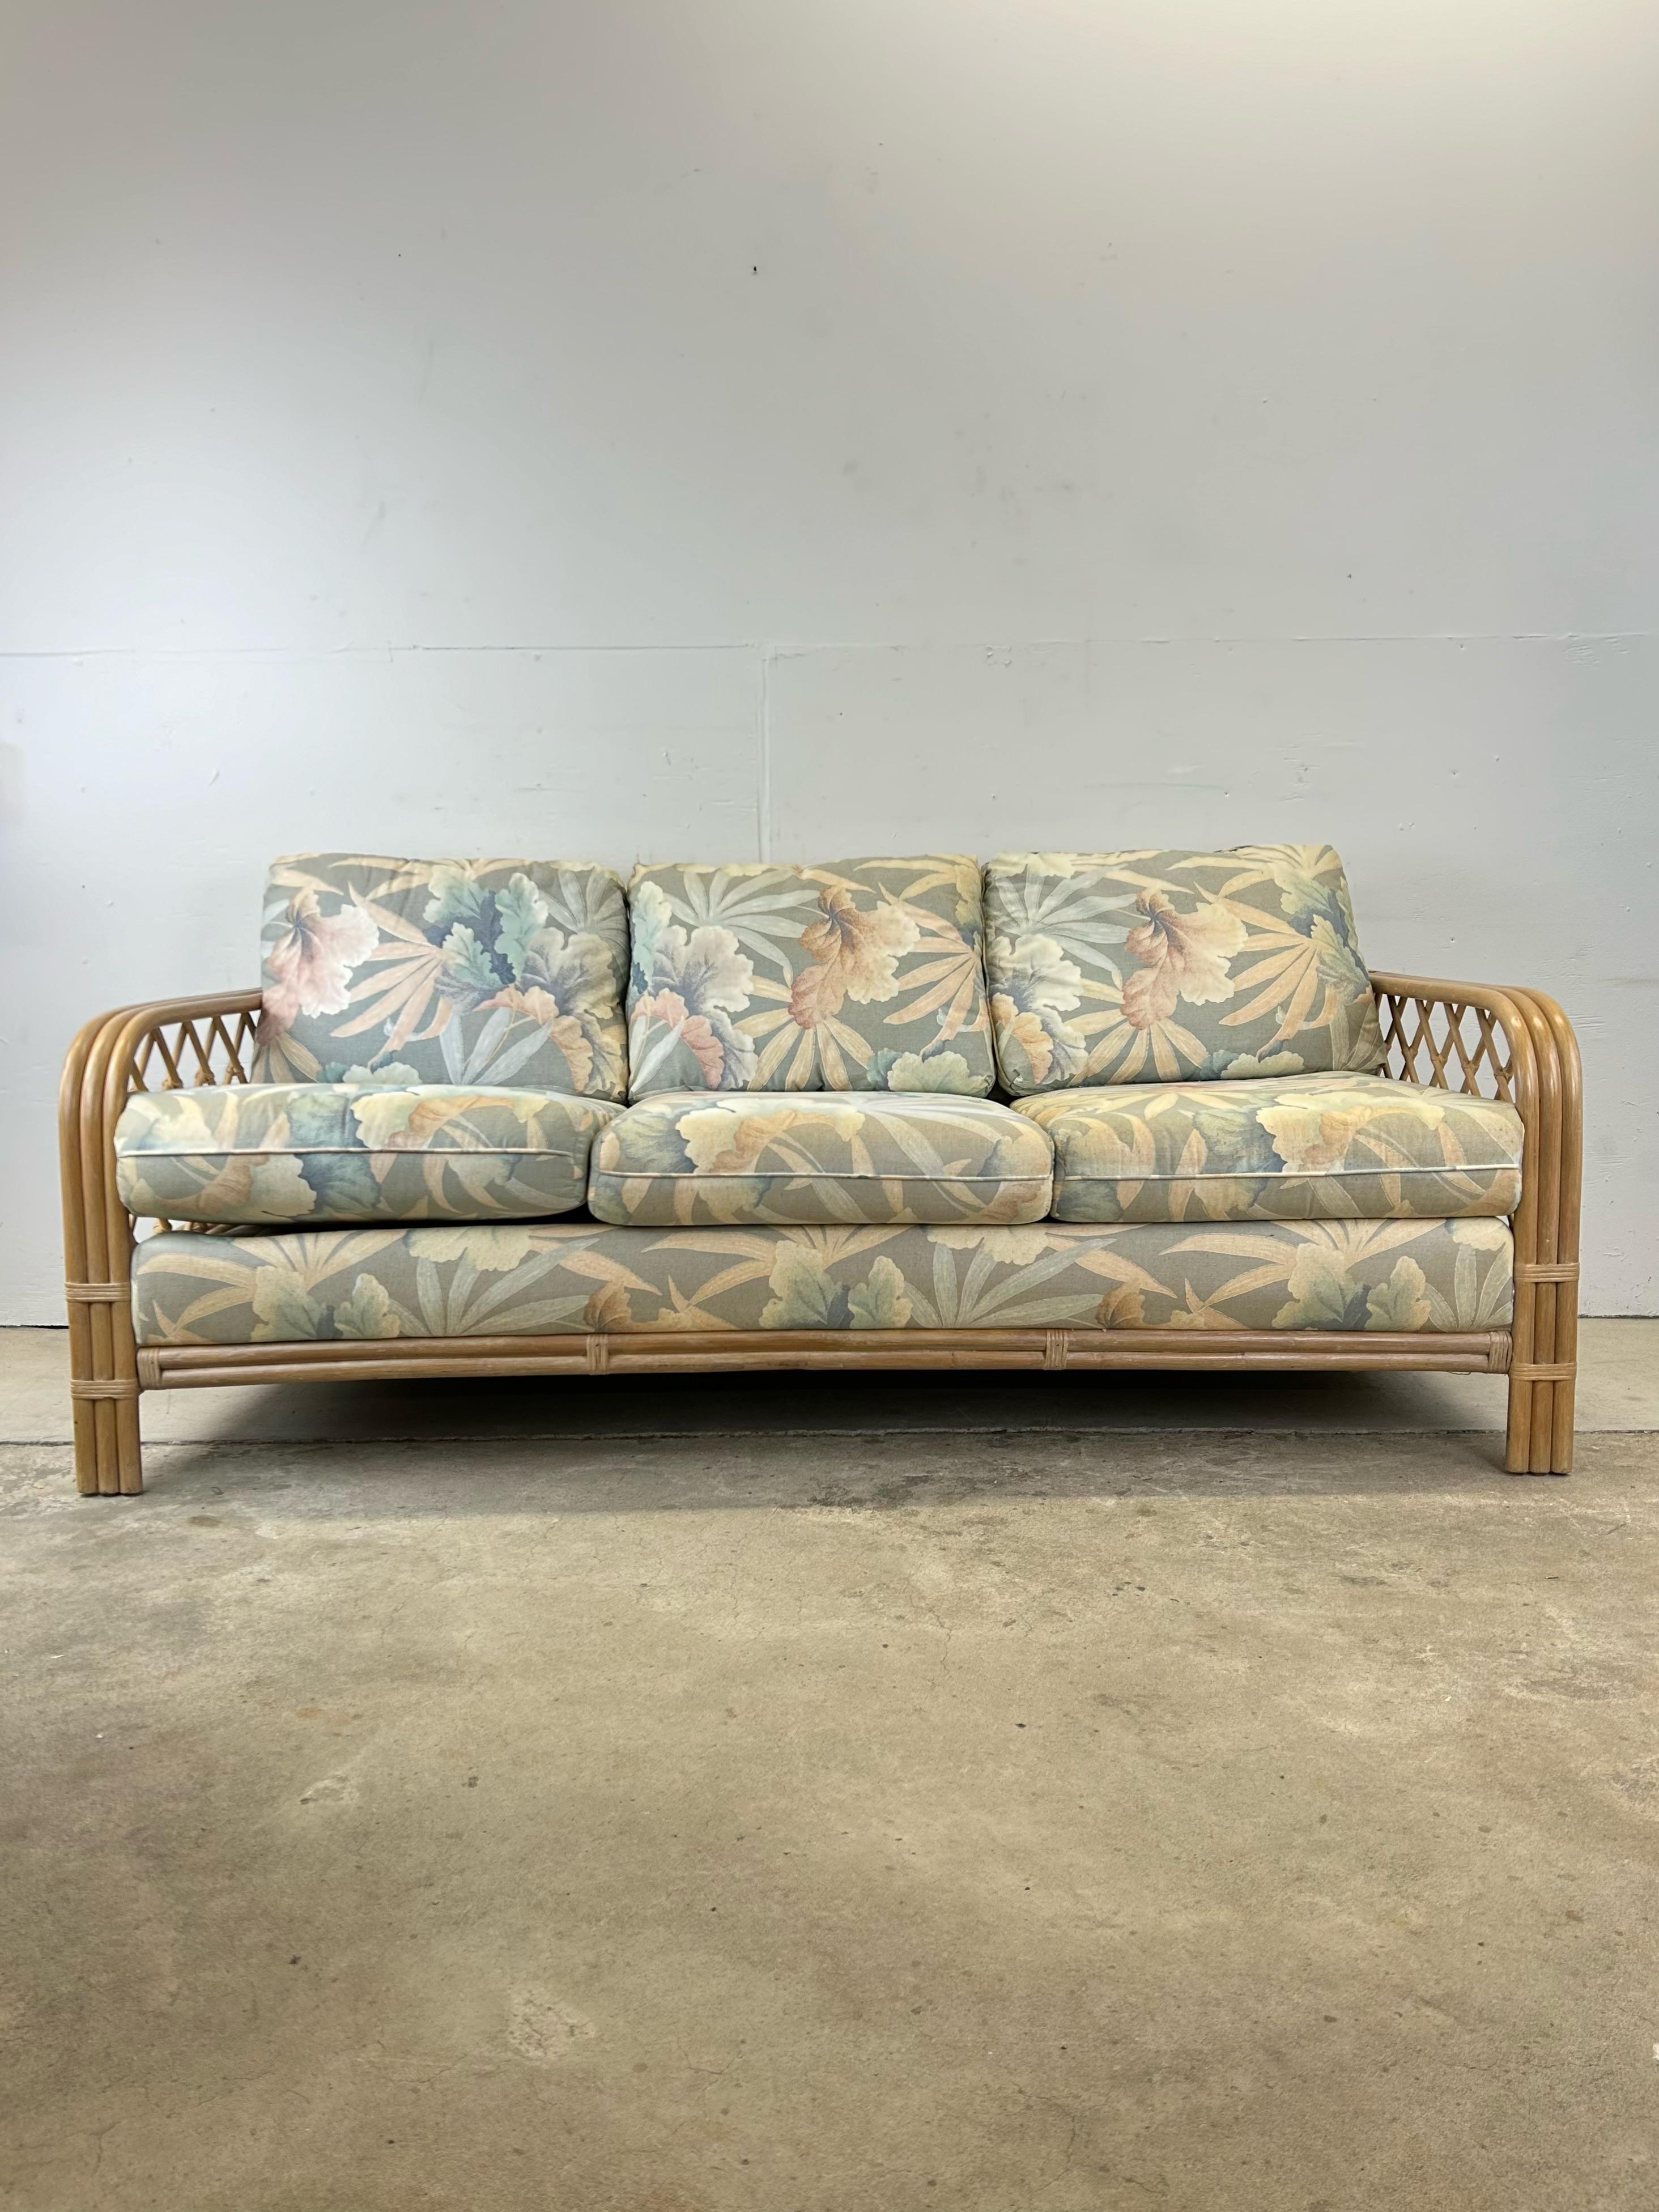 Dieses Vintage-Sofa besteht aus einem weiß gewaschenen Rattan-Gestell mit Armlehnen aus Bugholz und abnehmbaren Kissen mit originaler Blumenpolsterung. 

Die passende Sitzbank ist separat erhältlich.  

Abmessungen: 78w 34d 32h 20sh 25ah

Zustand: